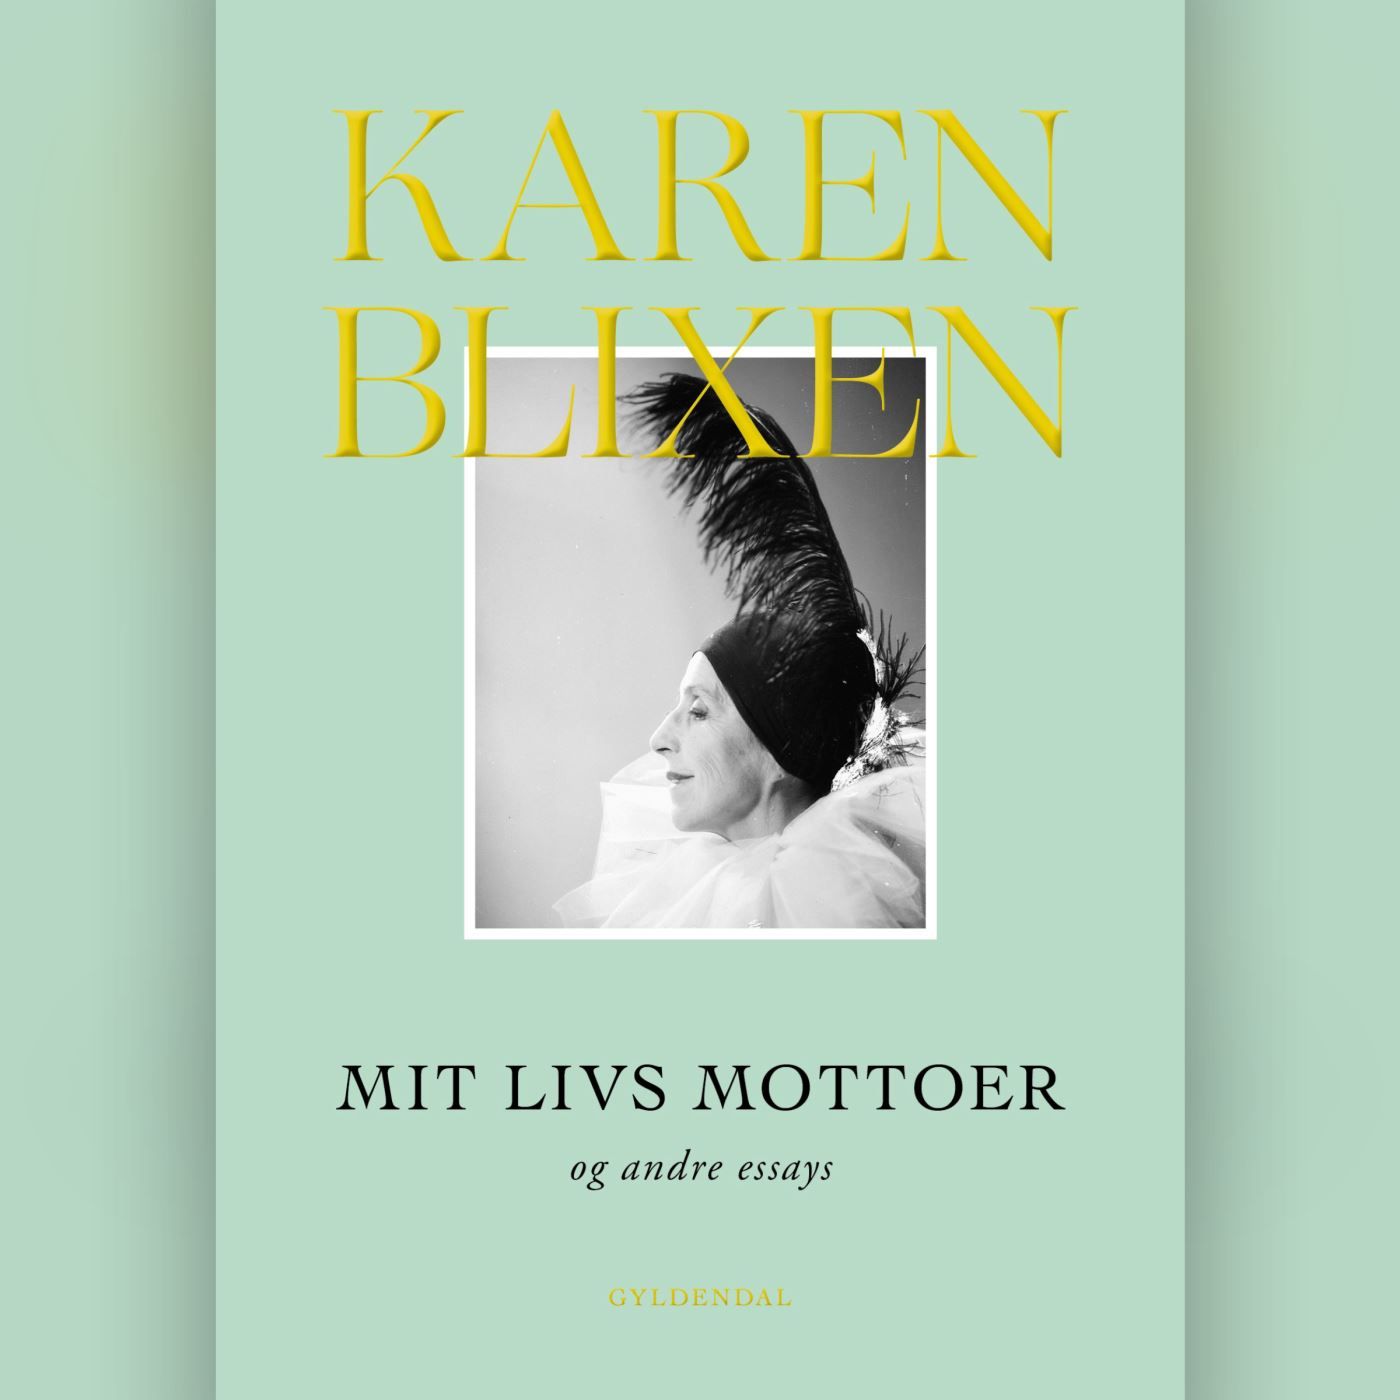 Mit livs mottoer og andre essays, ljudbok av Karen Blixen